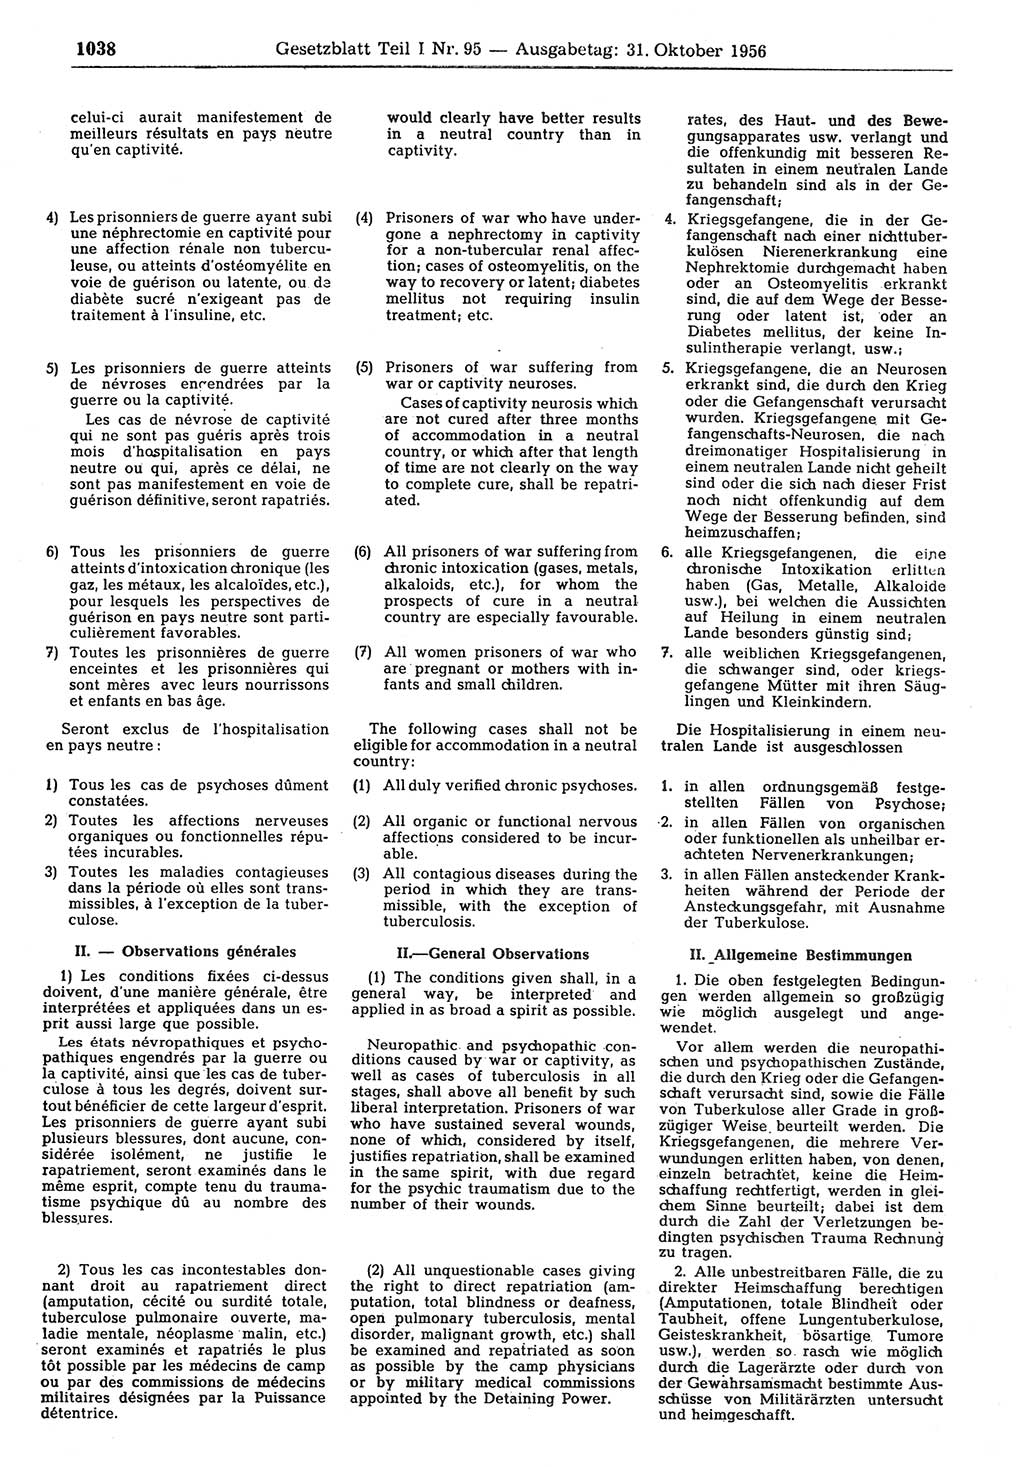 Gesetzblatt (GBl.) der Deutschen Demokratischen Republik (DDR) Teil Ⅰ 1956, Seite 1038 (GBl. DDR Ⅰ 1956, S. 1038)